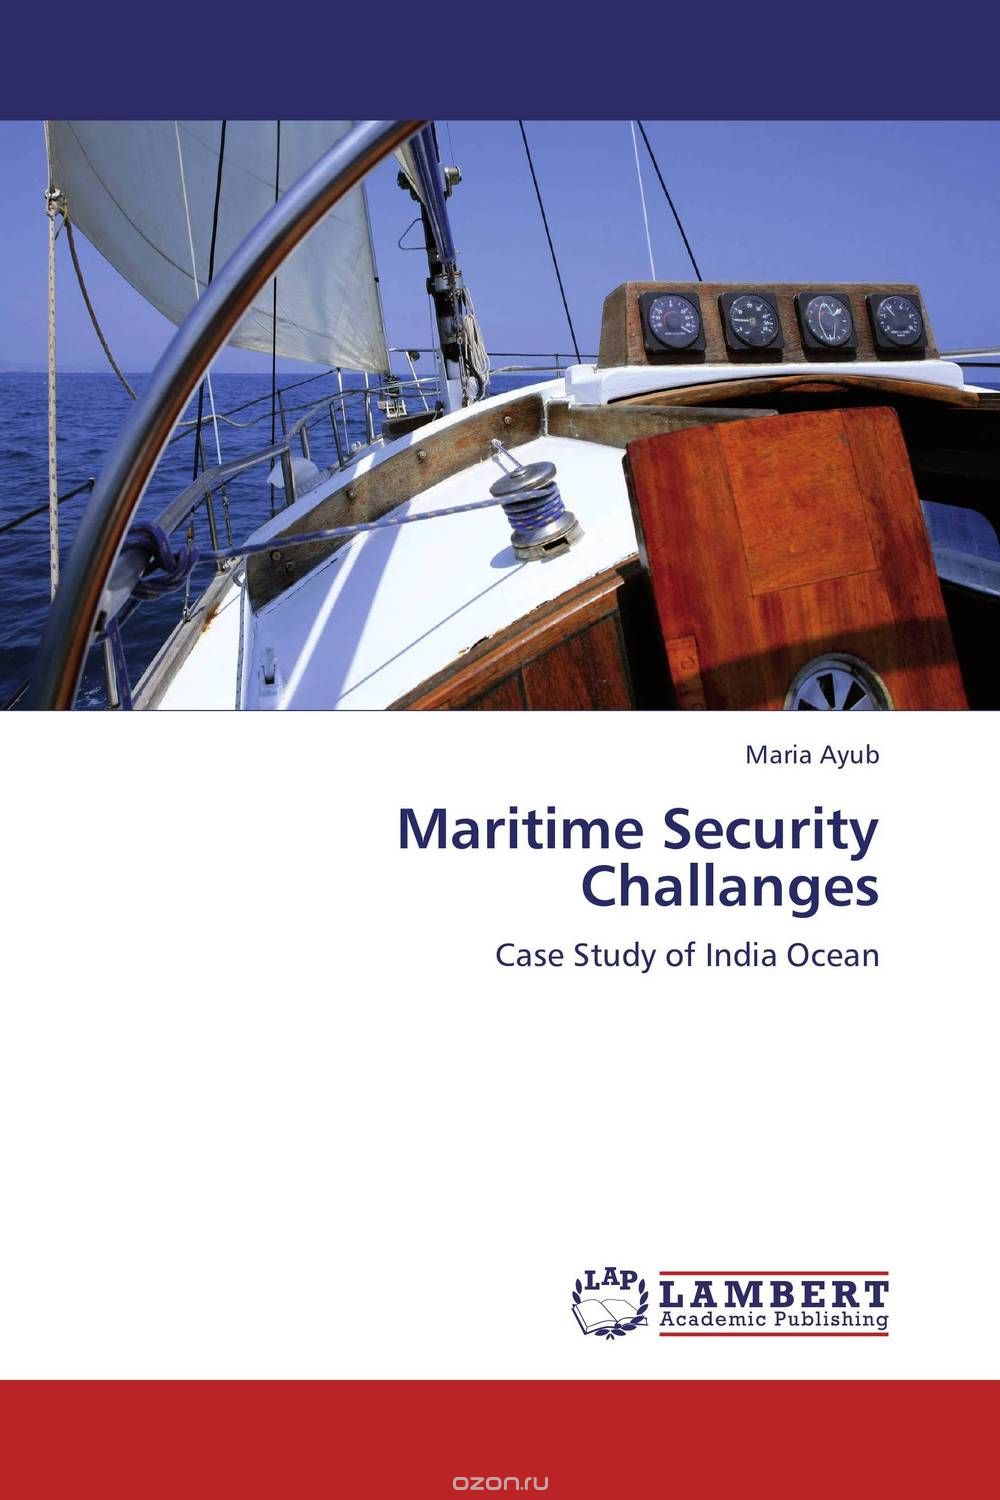 Скачать книгу "Maritime Security Challanges"